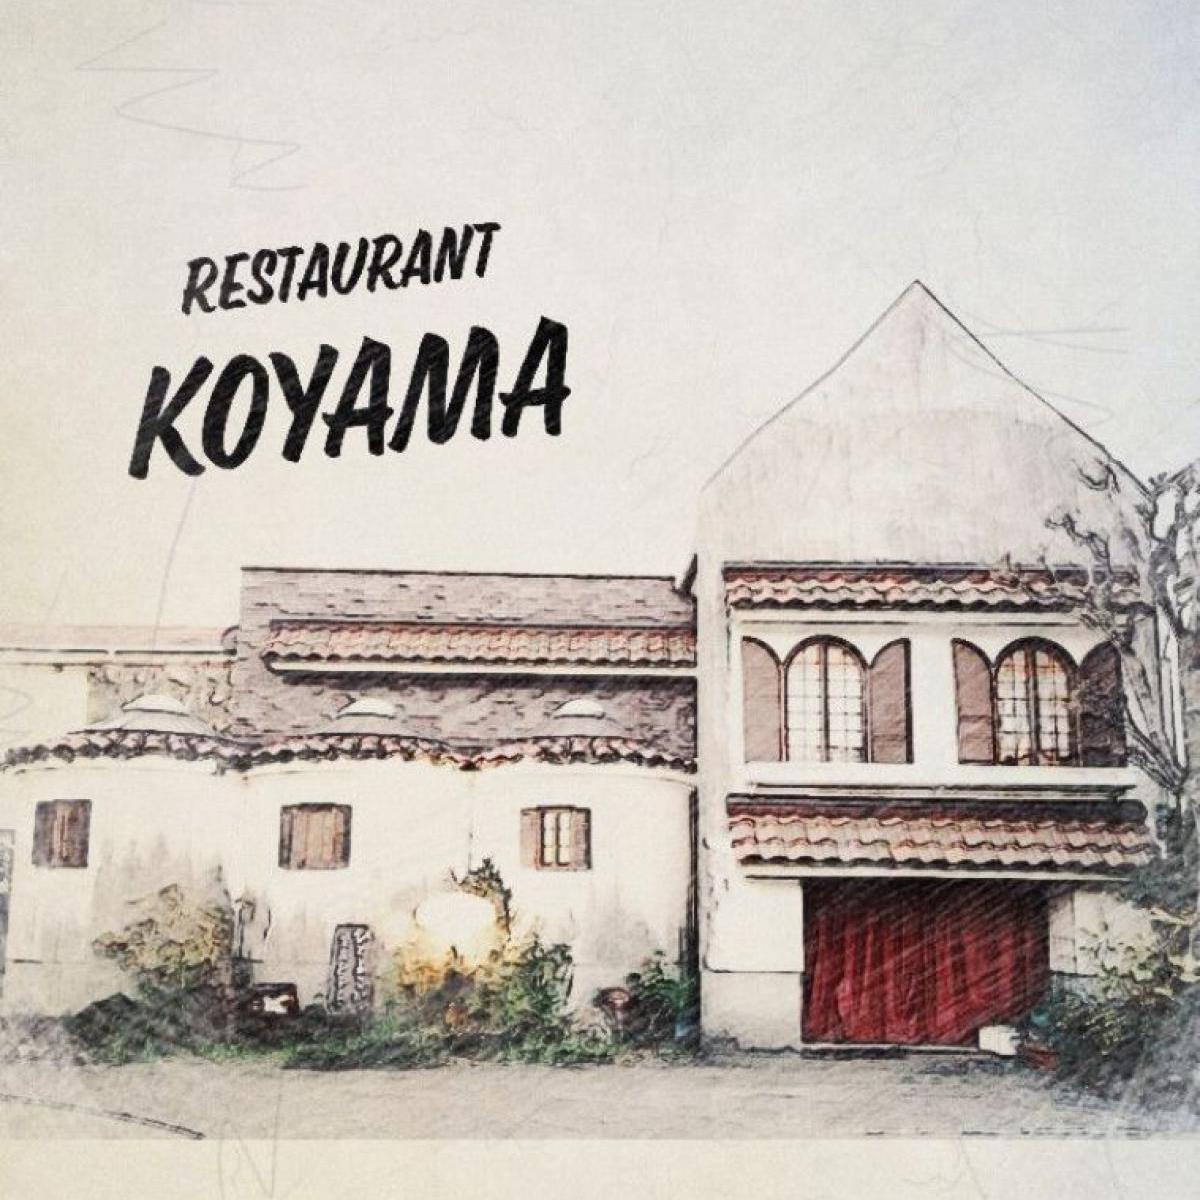 欧風家庭料理の店コヤマ